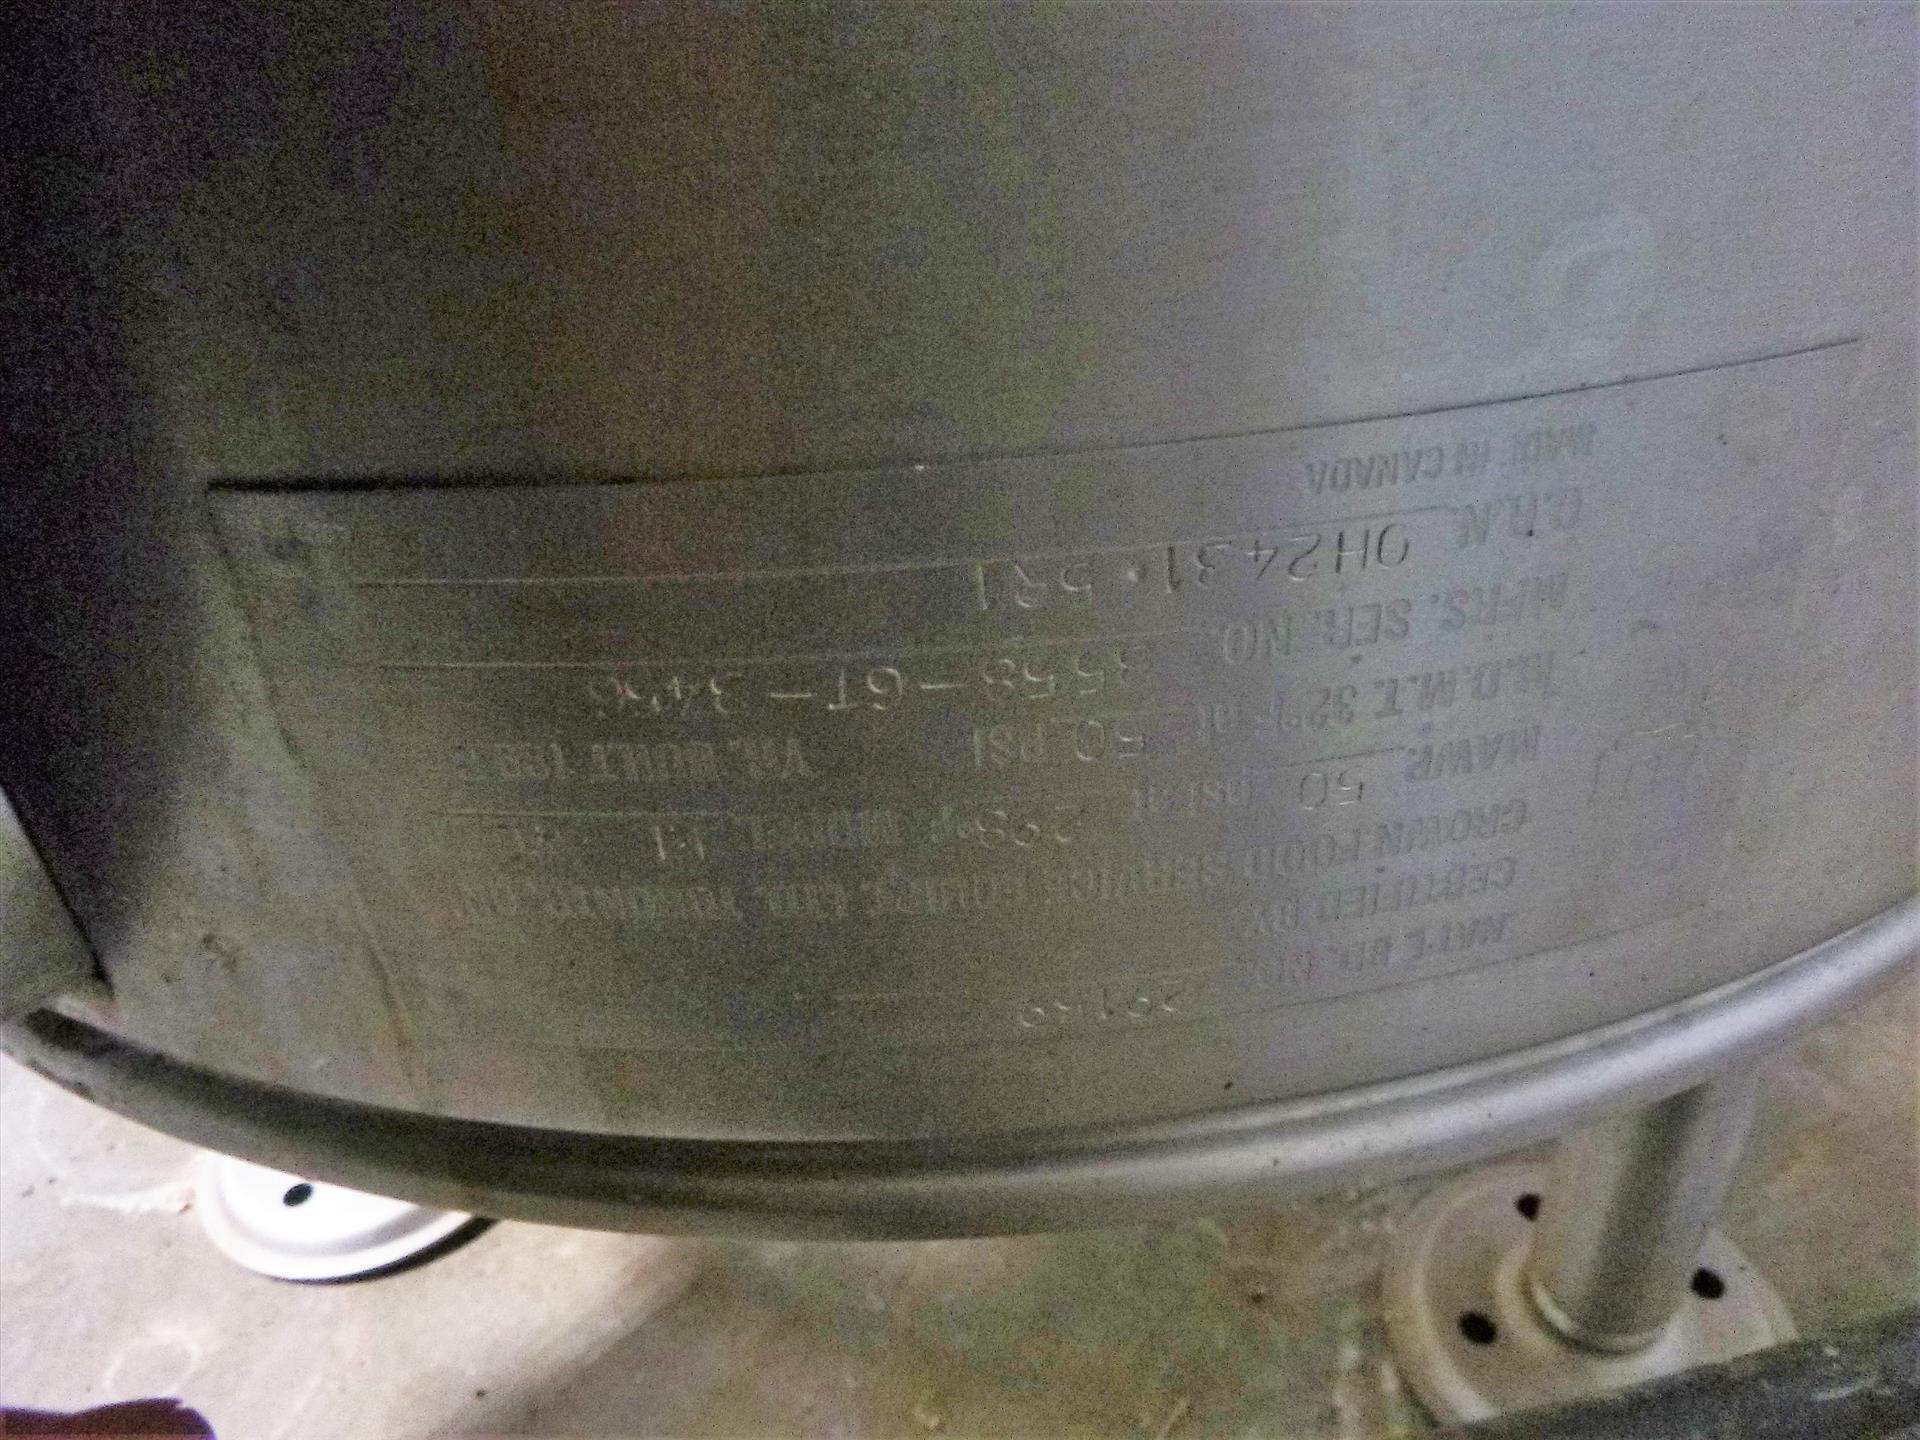 Vulcan model EL-40 S/S kettle, S/N: 3558-6T-3456, (1998) - Image 4 of 4